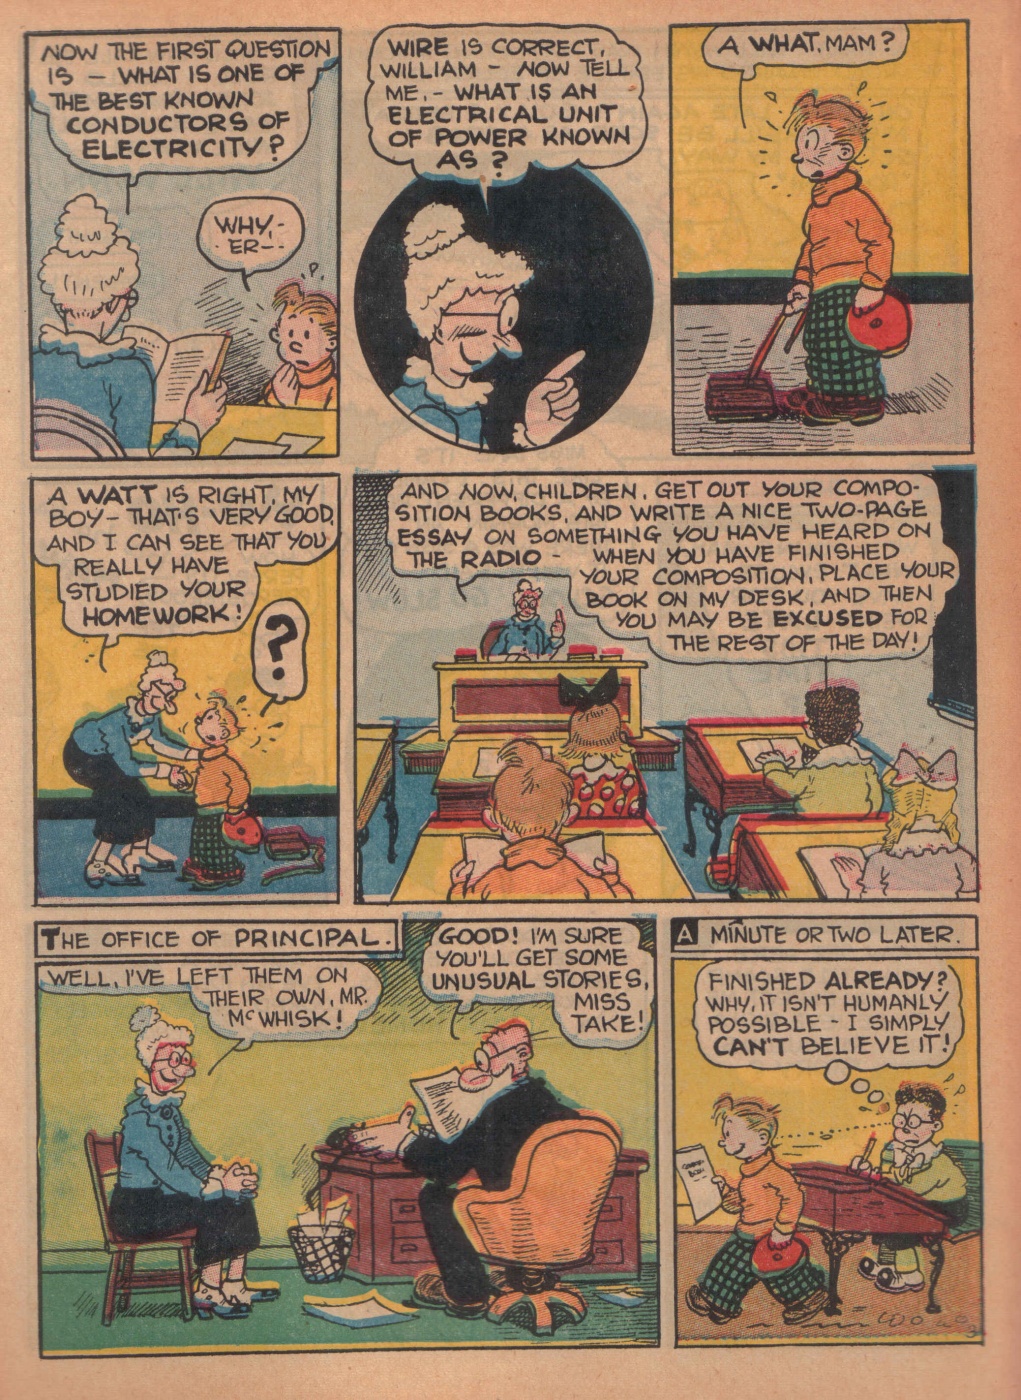 Super Dooper Funny Comics (14)